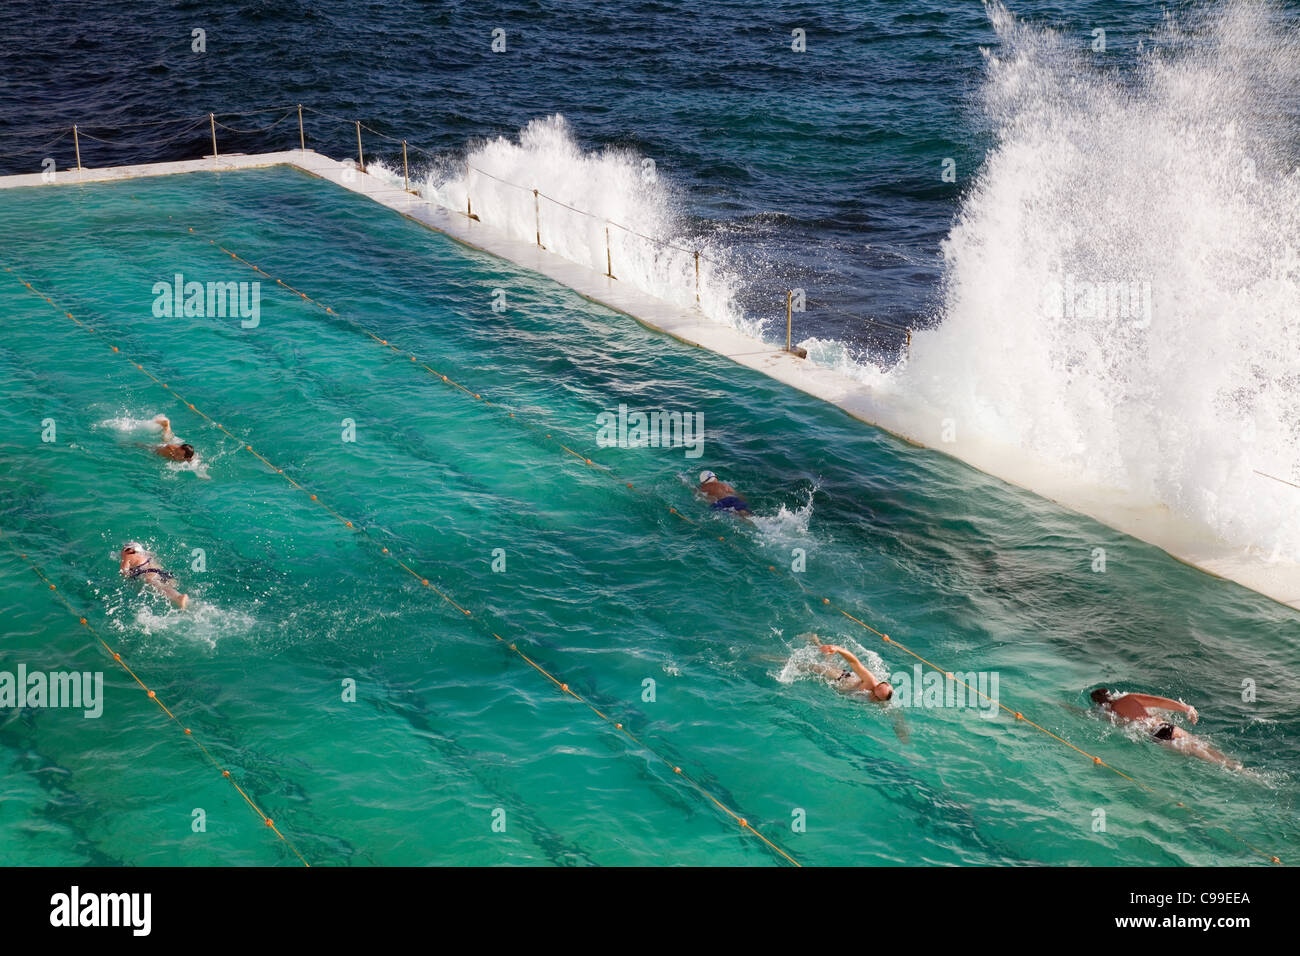 Nuotatori facendo giri a Bagni di Bondi - home alla Bondi iceberg club di nuoto. Sydney, Nuovo Galles del Sud, Australia Foto Stock